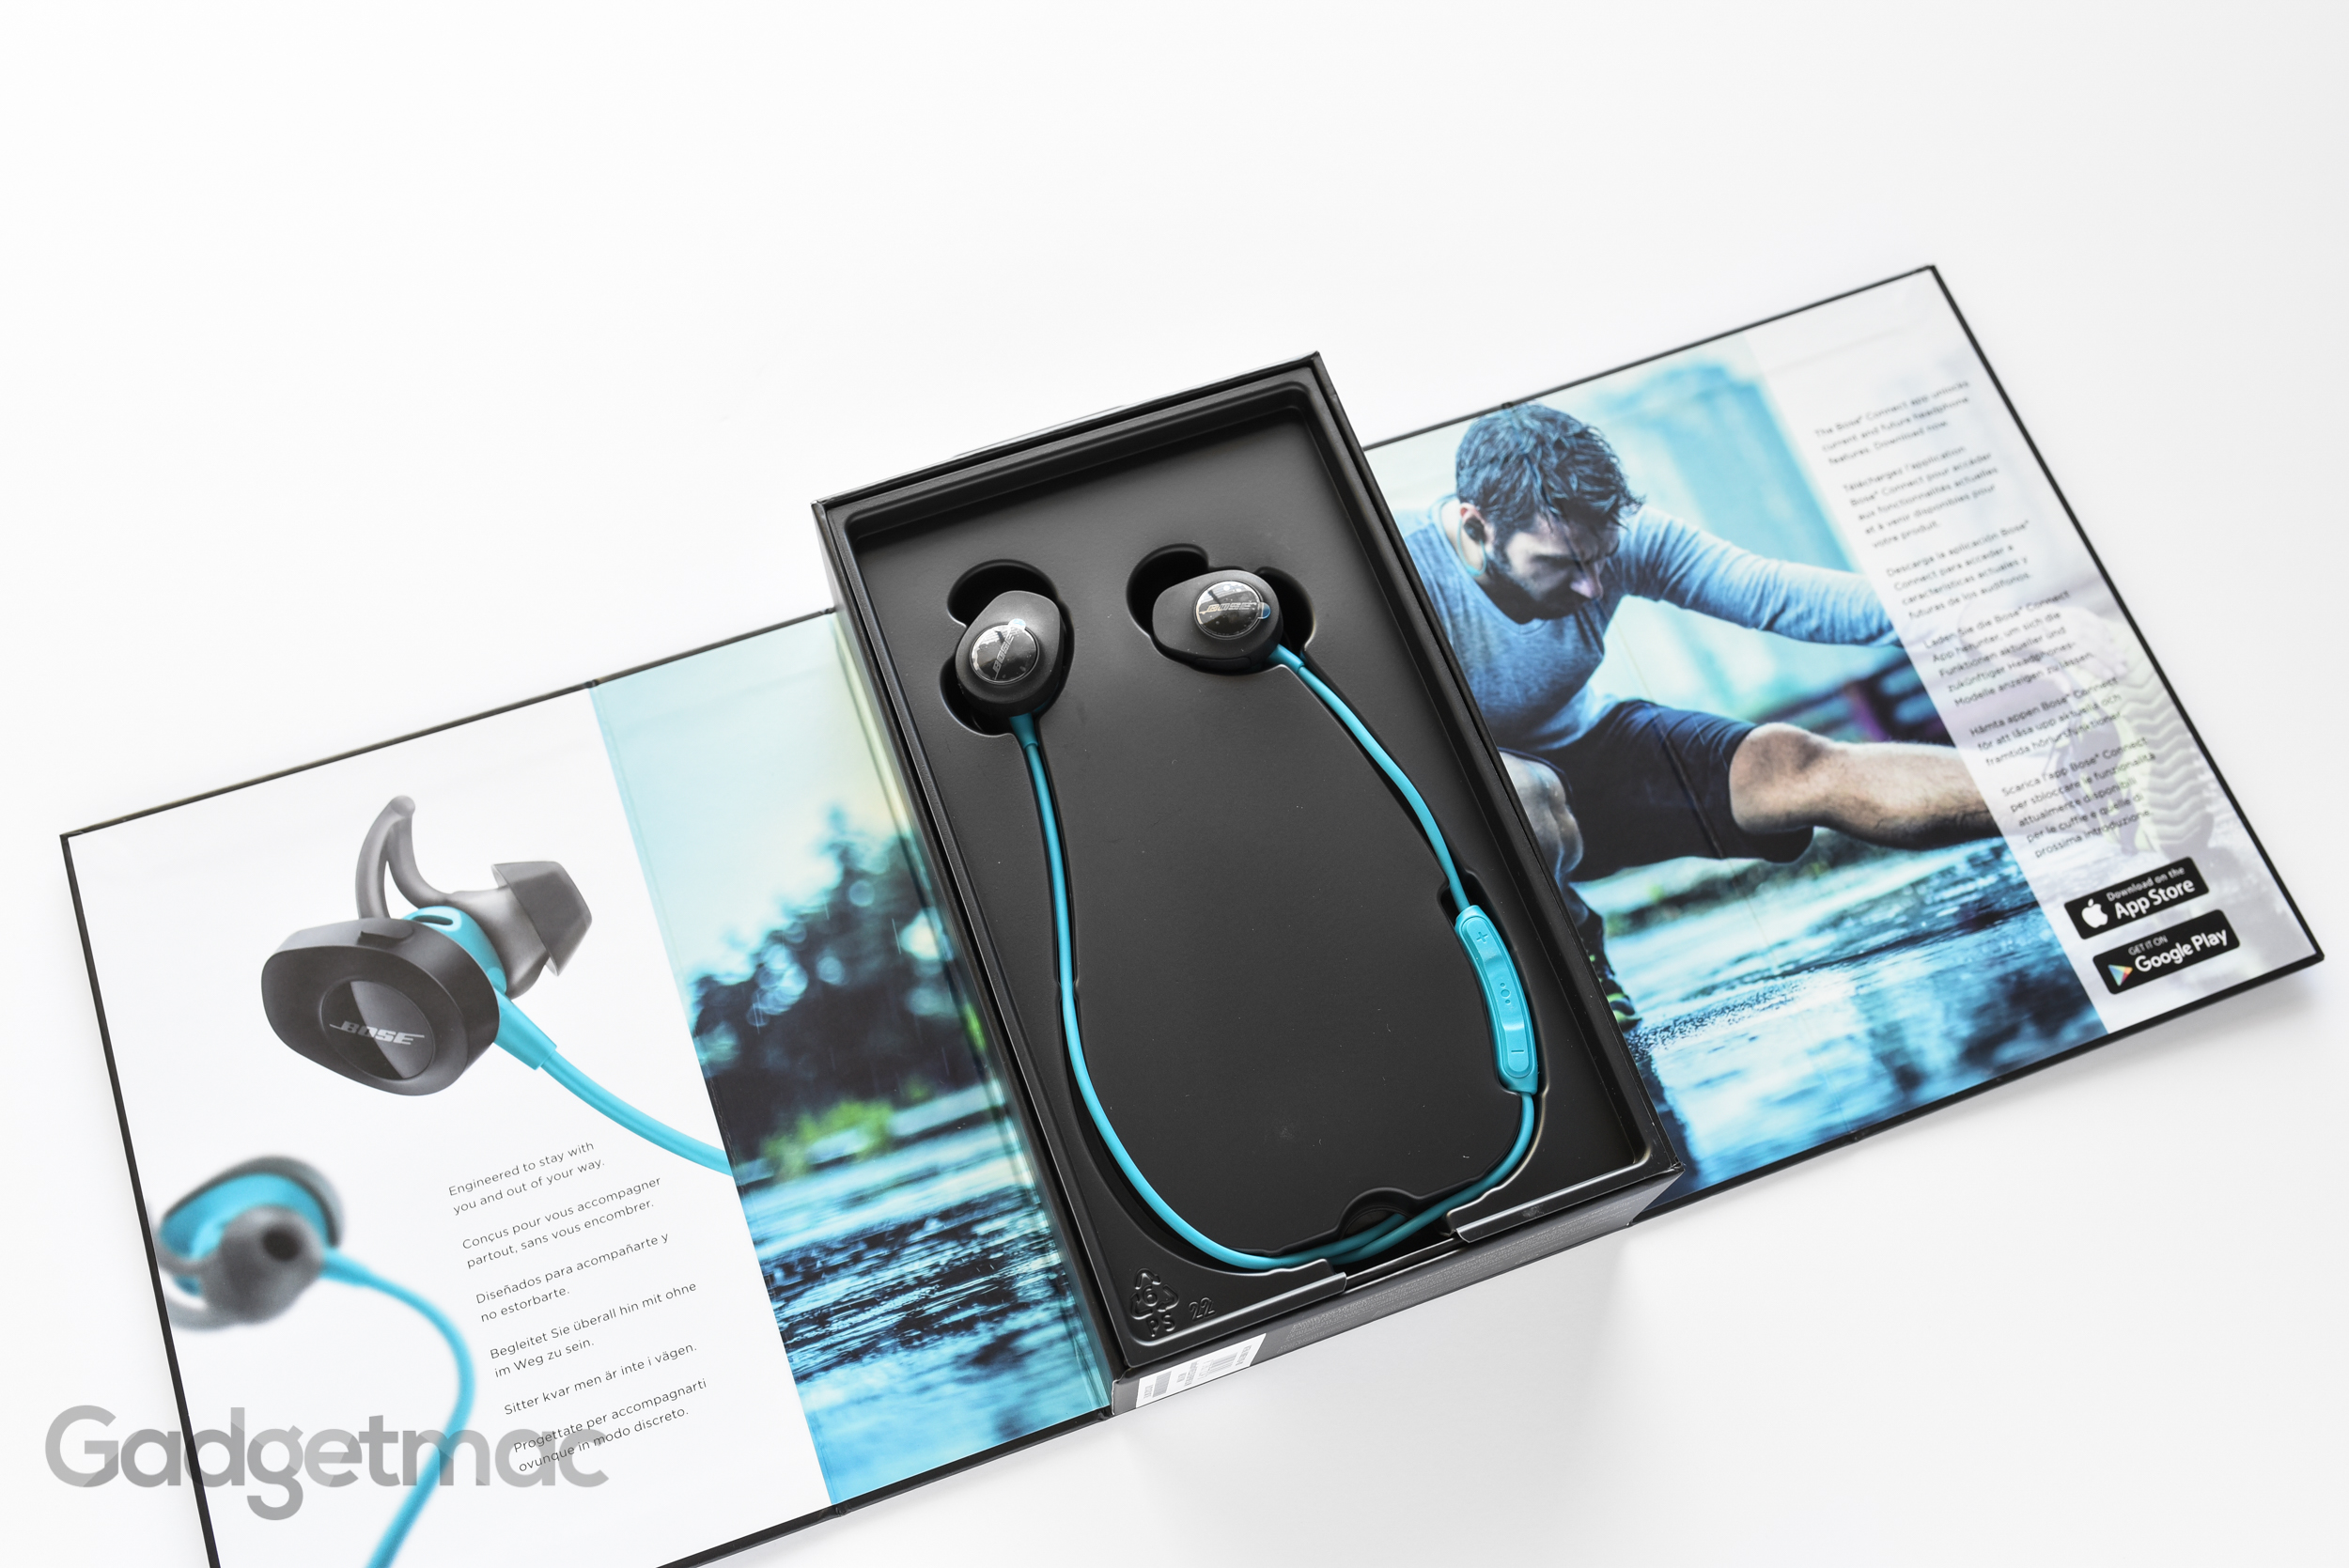 håndtag Kollektive køretøj Bose SoundSport Wireless In-Ear Headphones Review — Gadgetmac